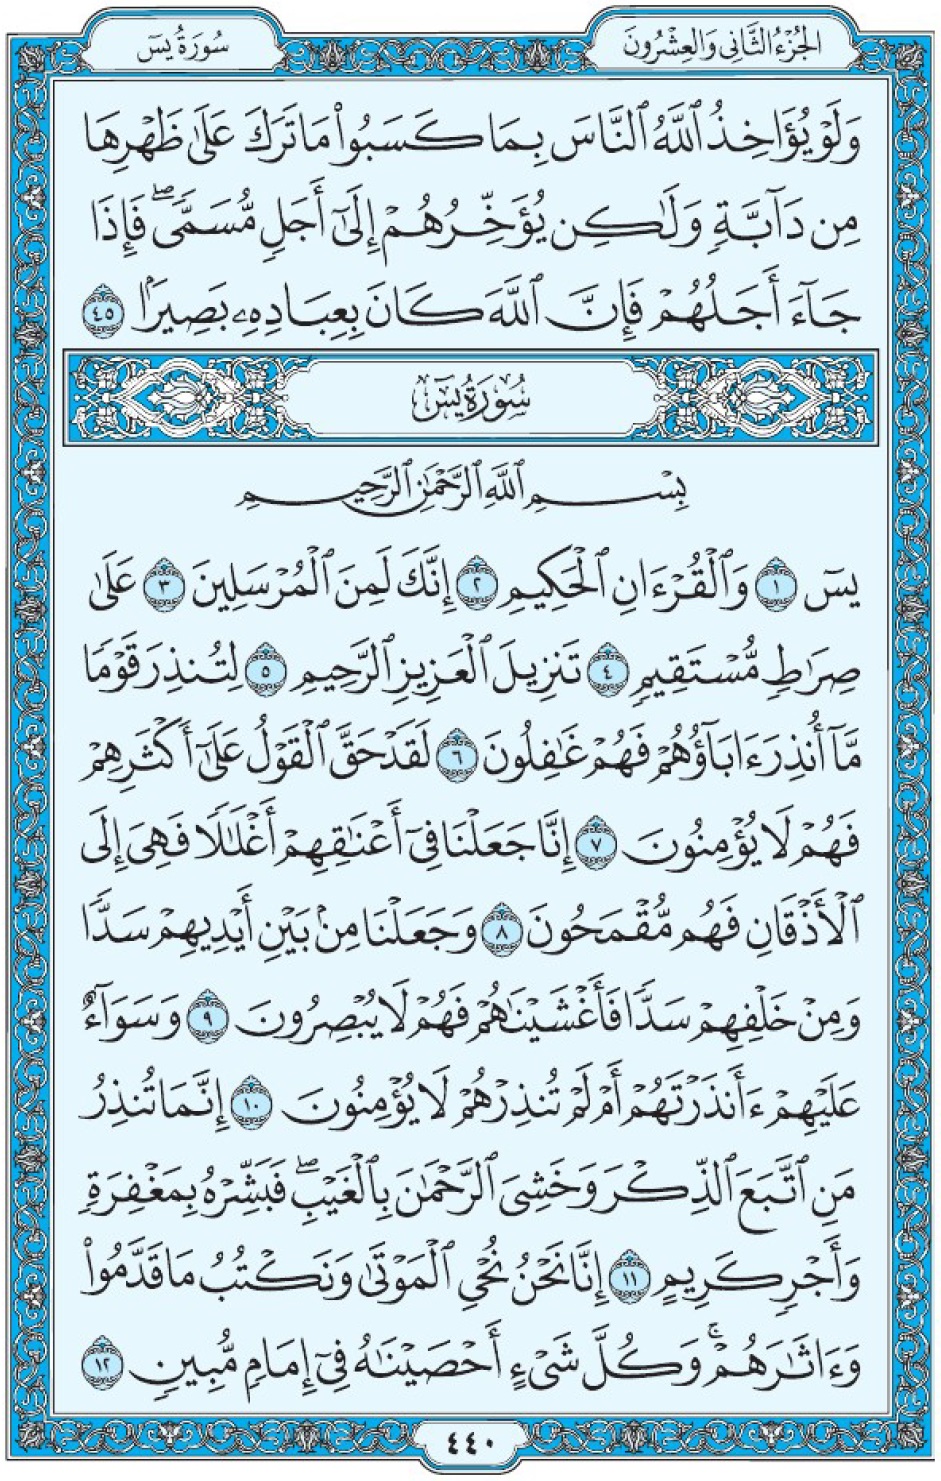 Коран Мединский мусхаф страница 440, сура 36 Йа Син سورة ٣٦ يس 